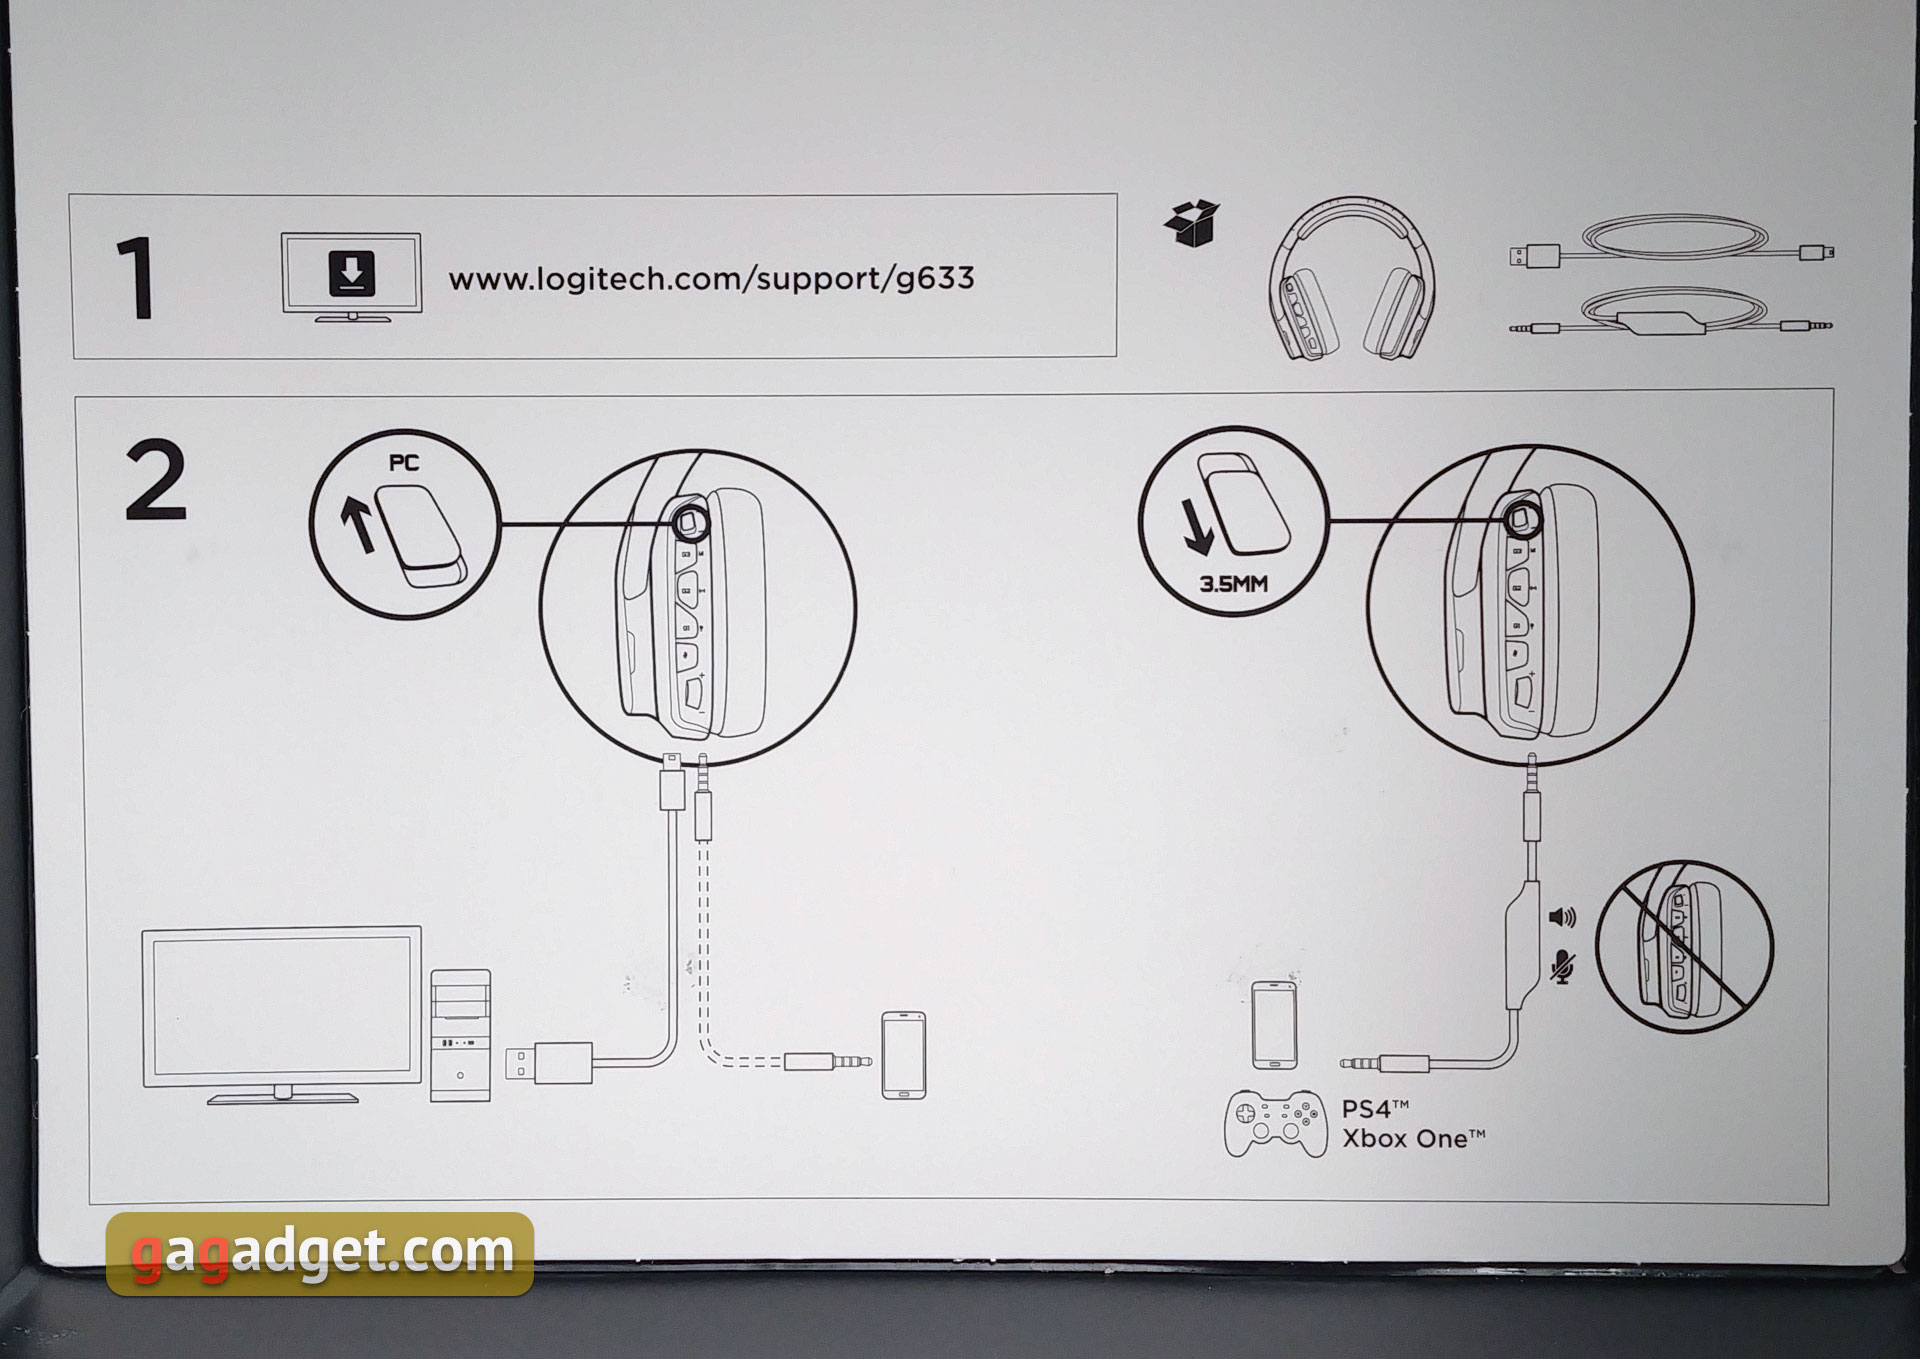 Обзор Logitech G633 Artemis Spectrum: игровая гарнитура с виртуальным звуком 7.1 и RGB-подсветкой-5